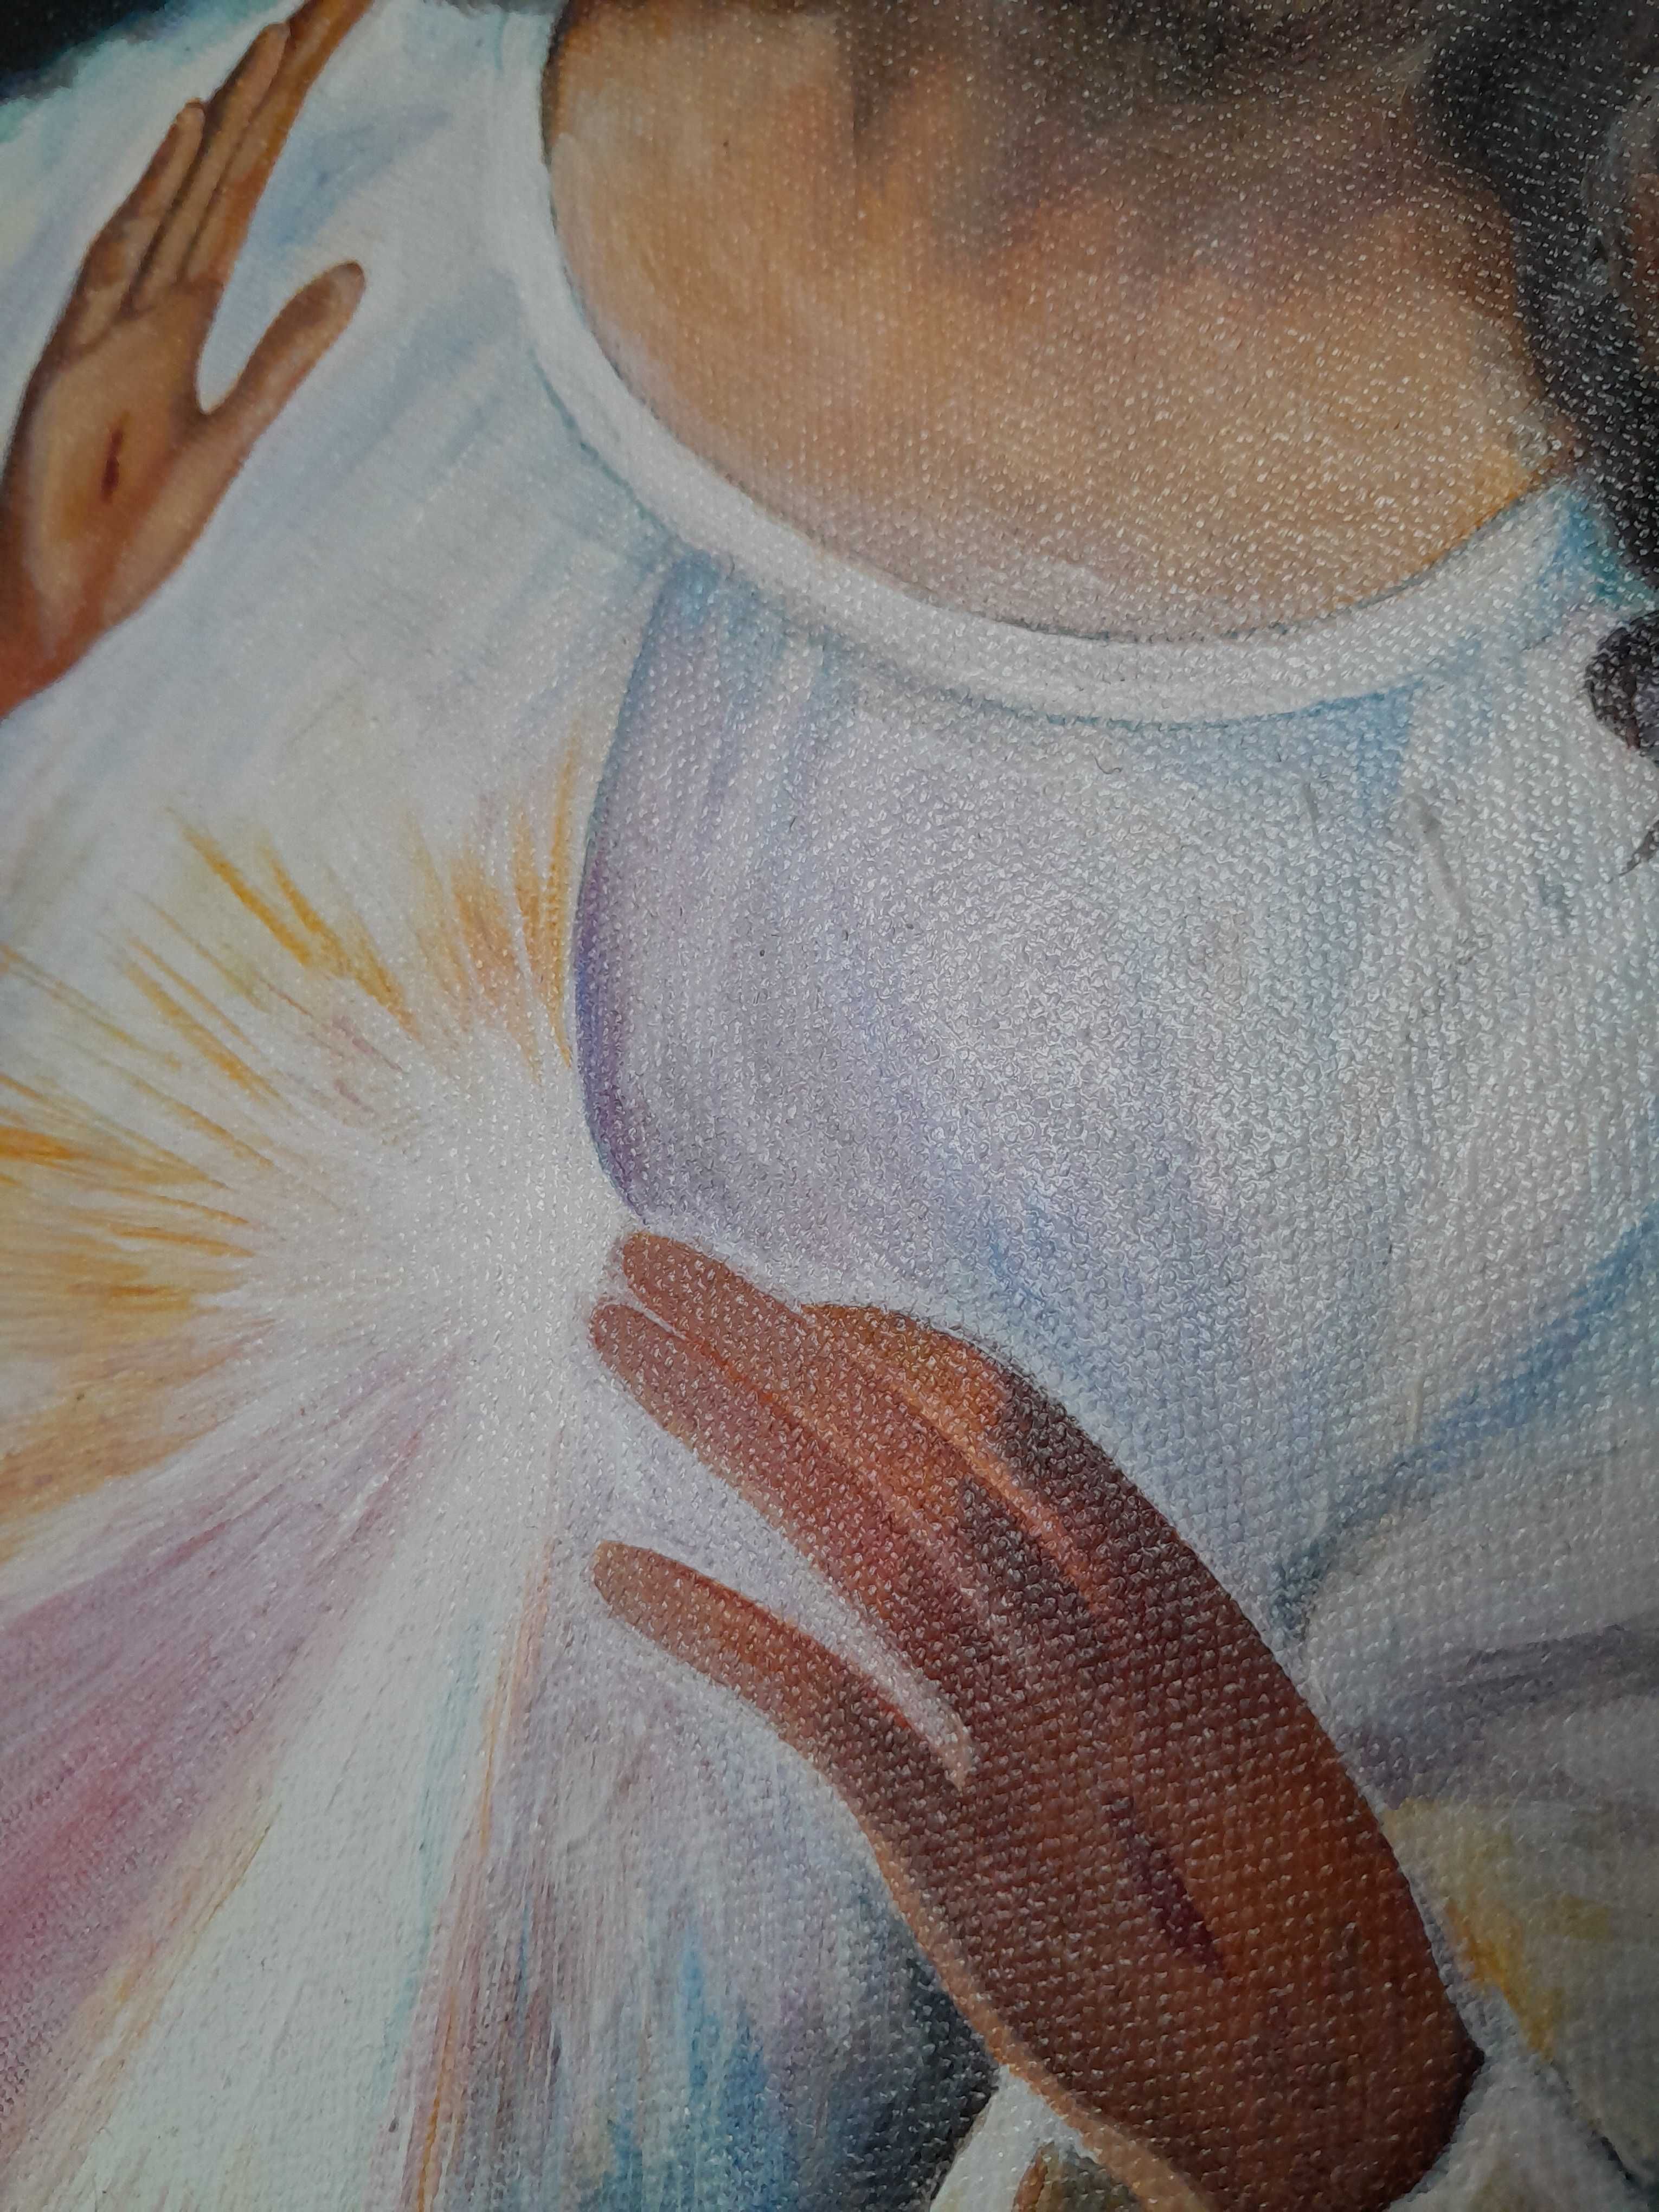 Jezus milosierny obraz olej na plotnie 120x60cm